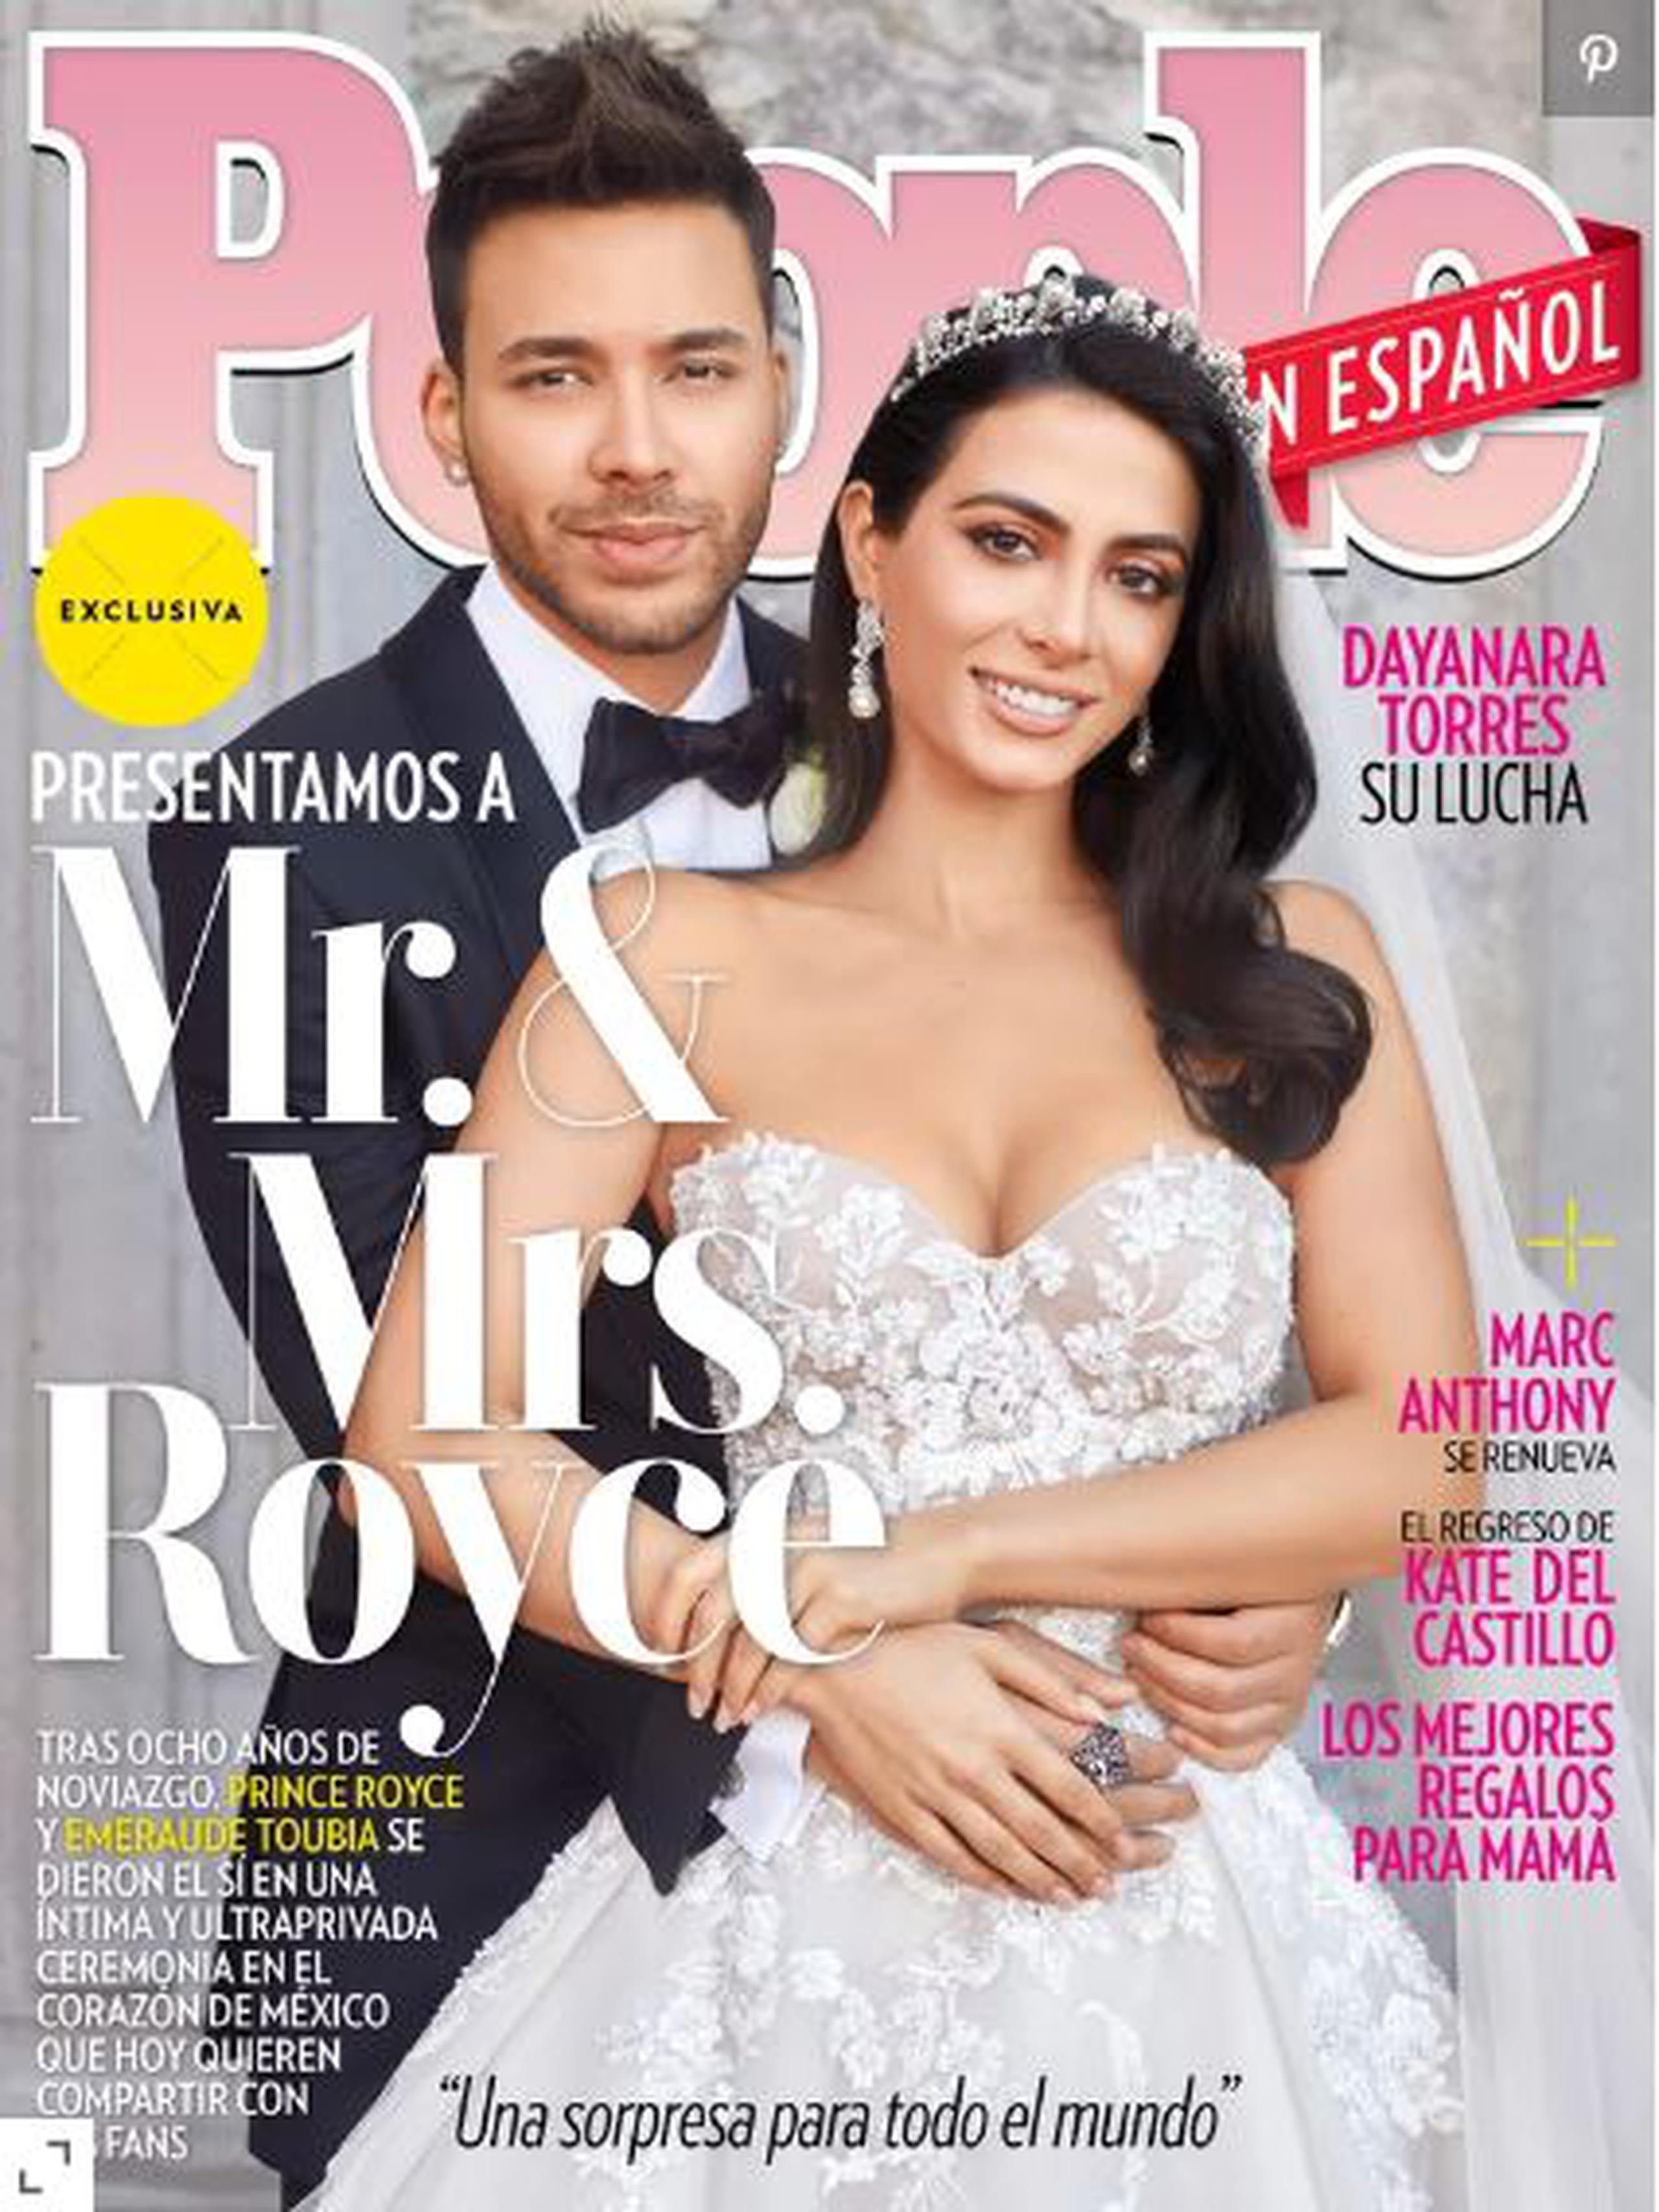 La boda del año, como muchos medios le llaman, fue publicada en la portada de People en Español. (Captura)